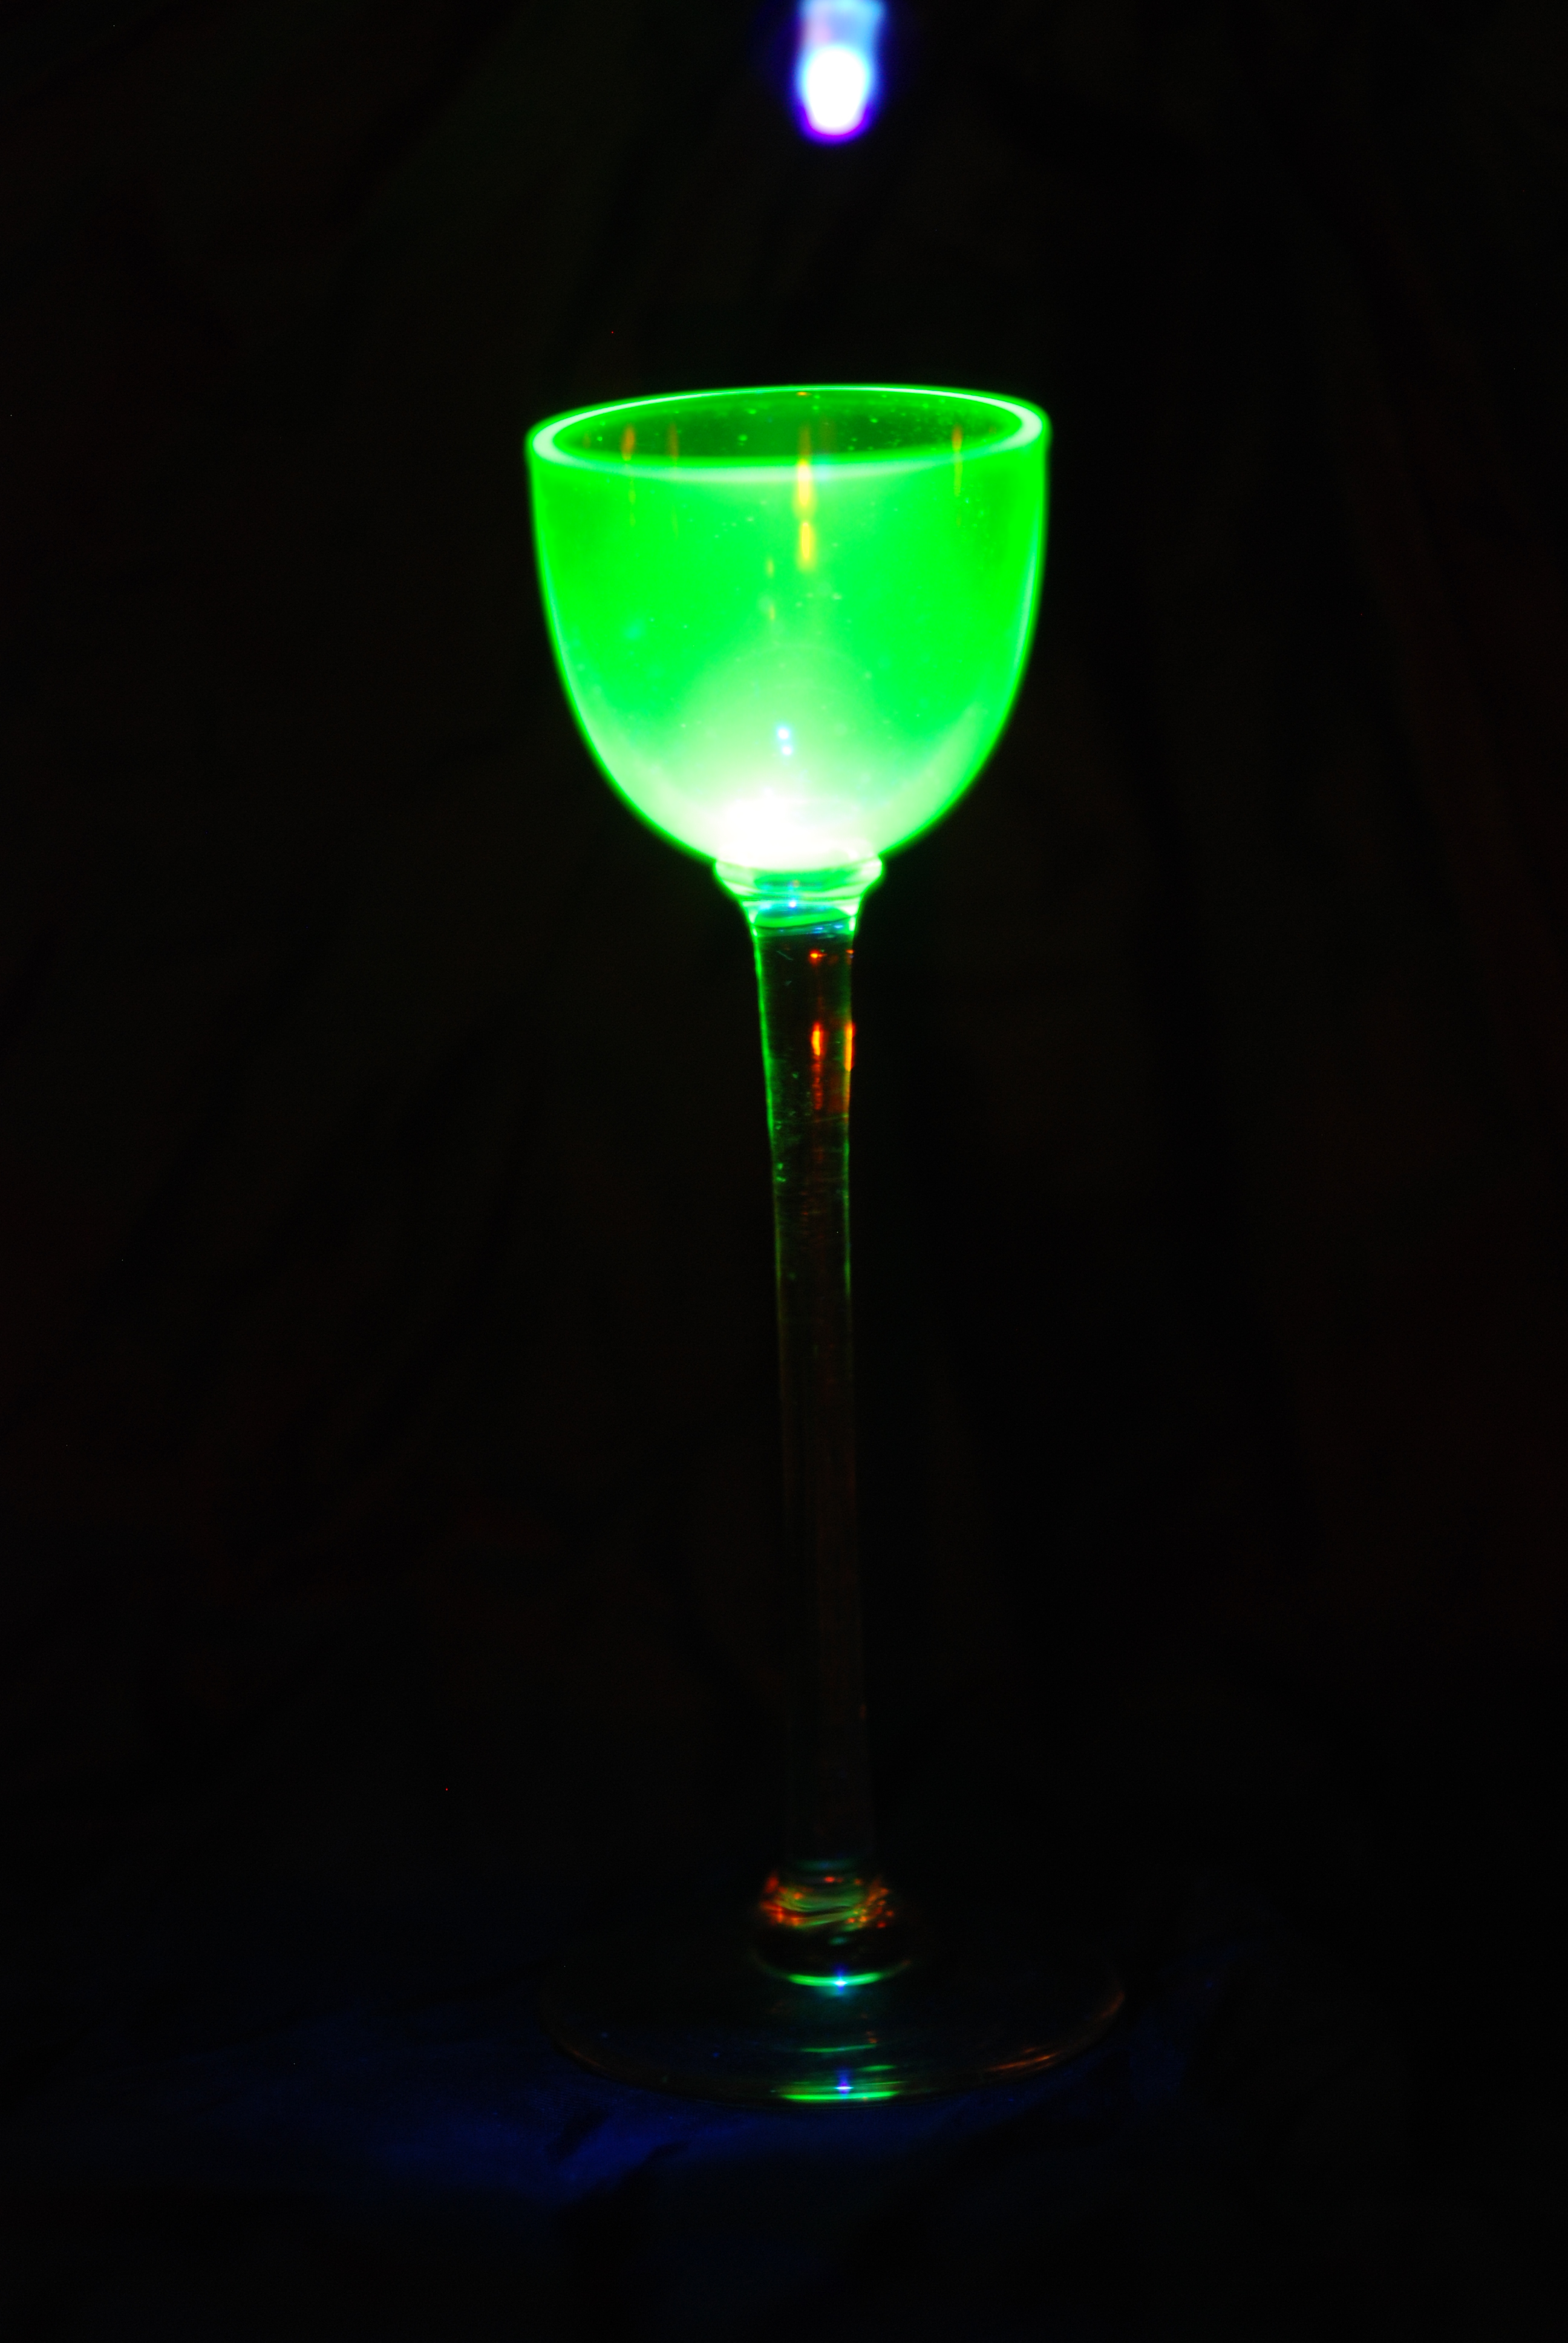 http://www.sciencecafeovervecht.nl/SBM2016/uraniumglass-UV-light-full.jpg